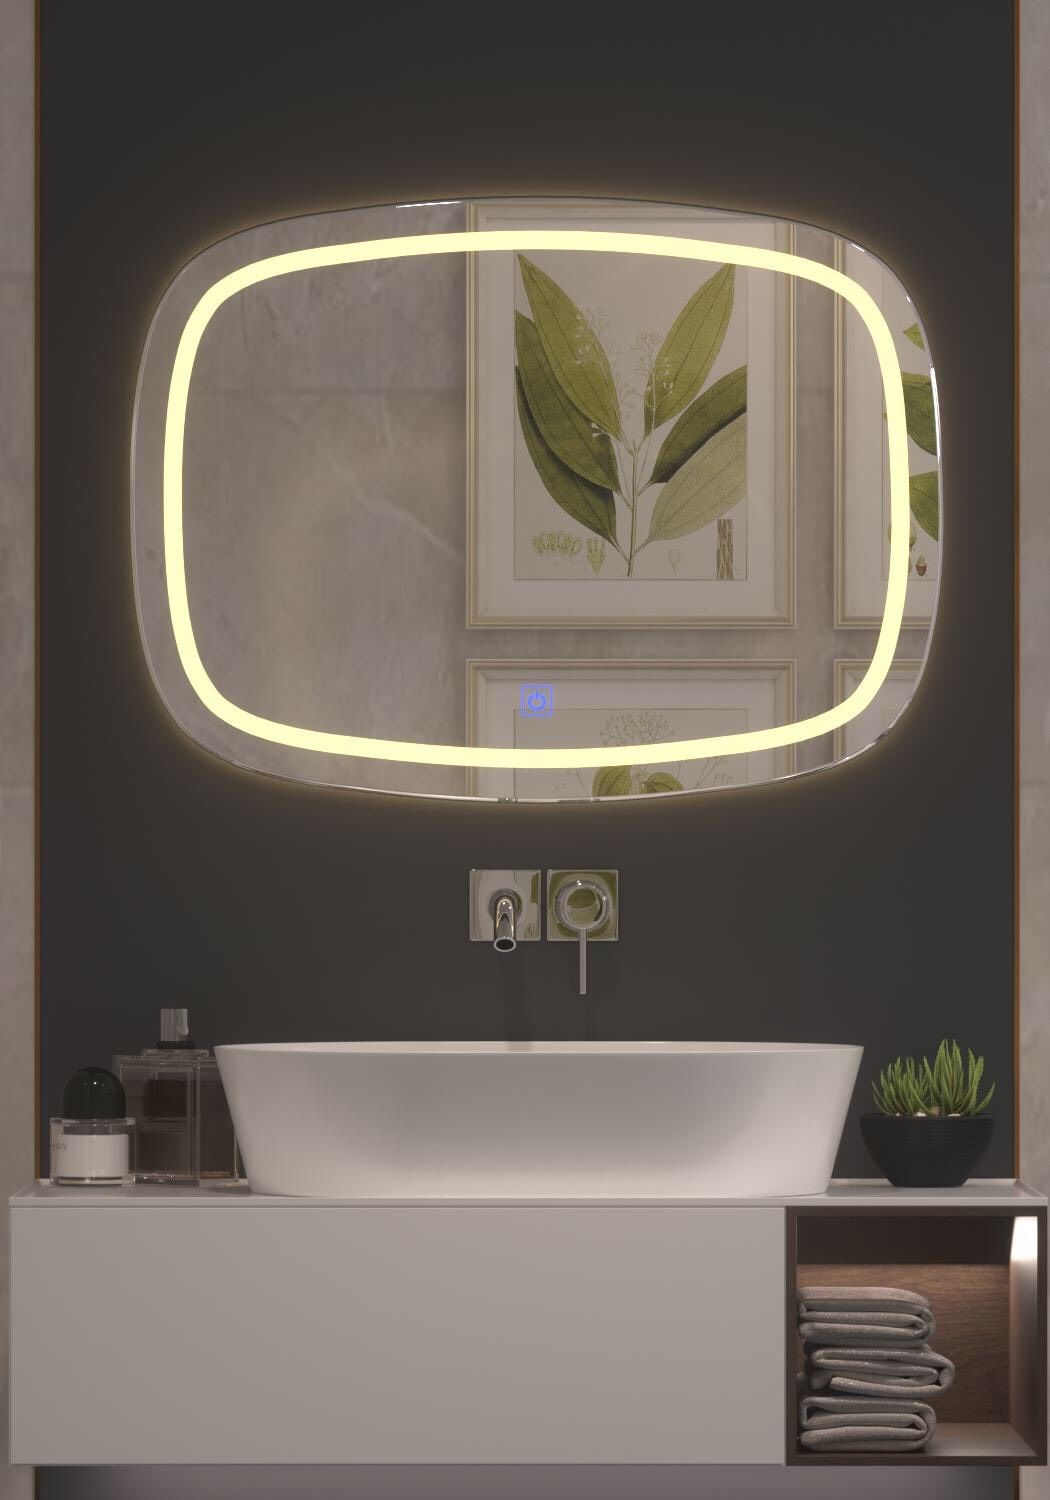 Gương soi đèn led phòng tắm GNT11 - Tích hợp đèn led và công tắc cảm ứng trên gương.